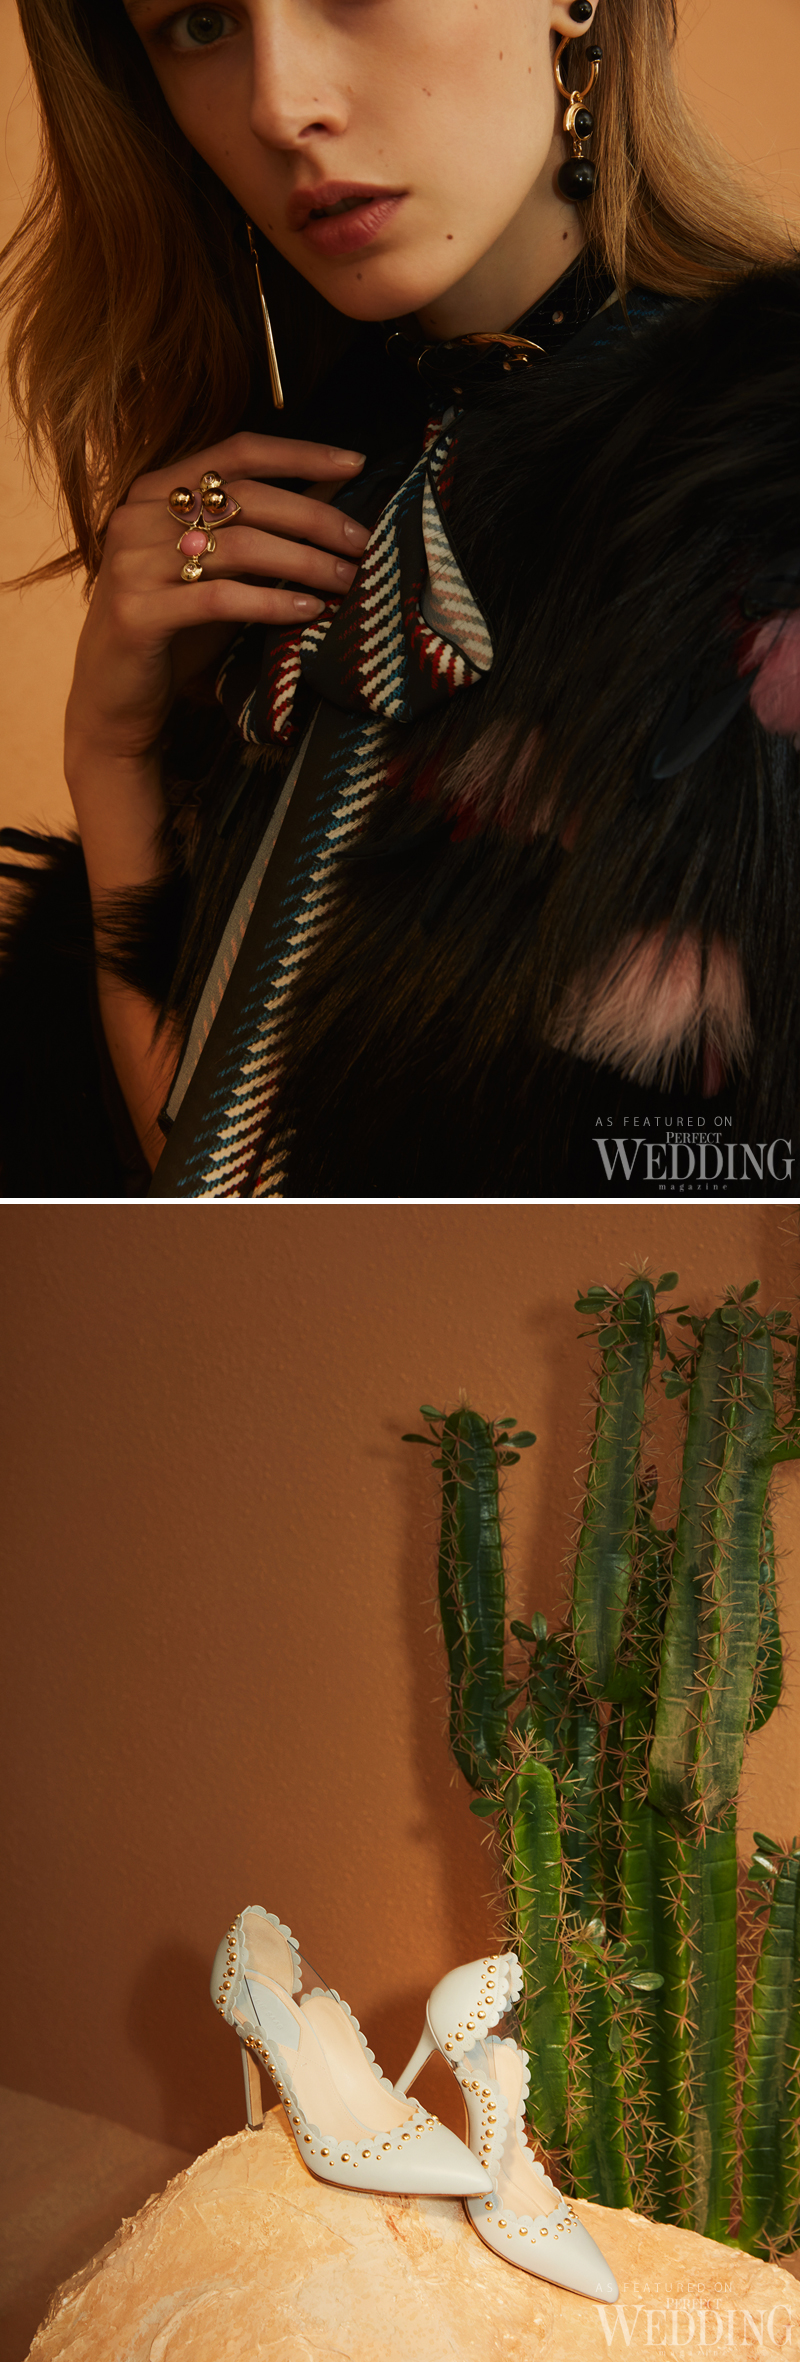 Wedding Magazine, Elie Saab, Elie Saab Pre-Fall 2018 Ready to Wear, Westbound Detour, Perfect Wedding Magazine, Perfect Wedding Blog, Elie Saab Shoes, Elie Saab Clutch, 